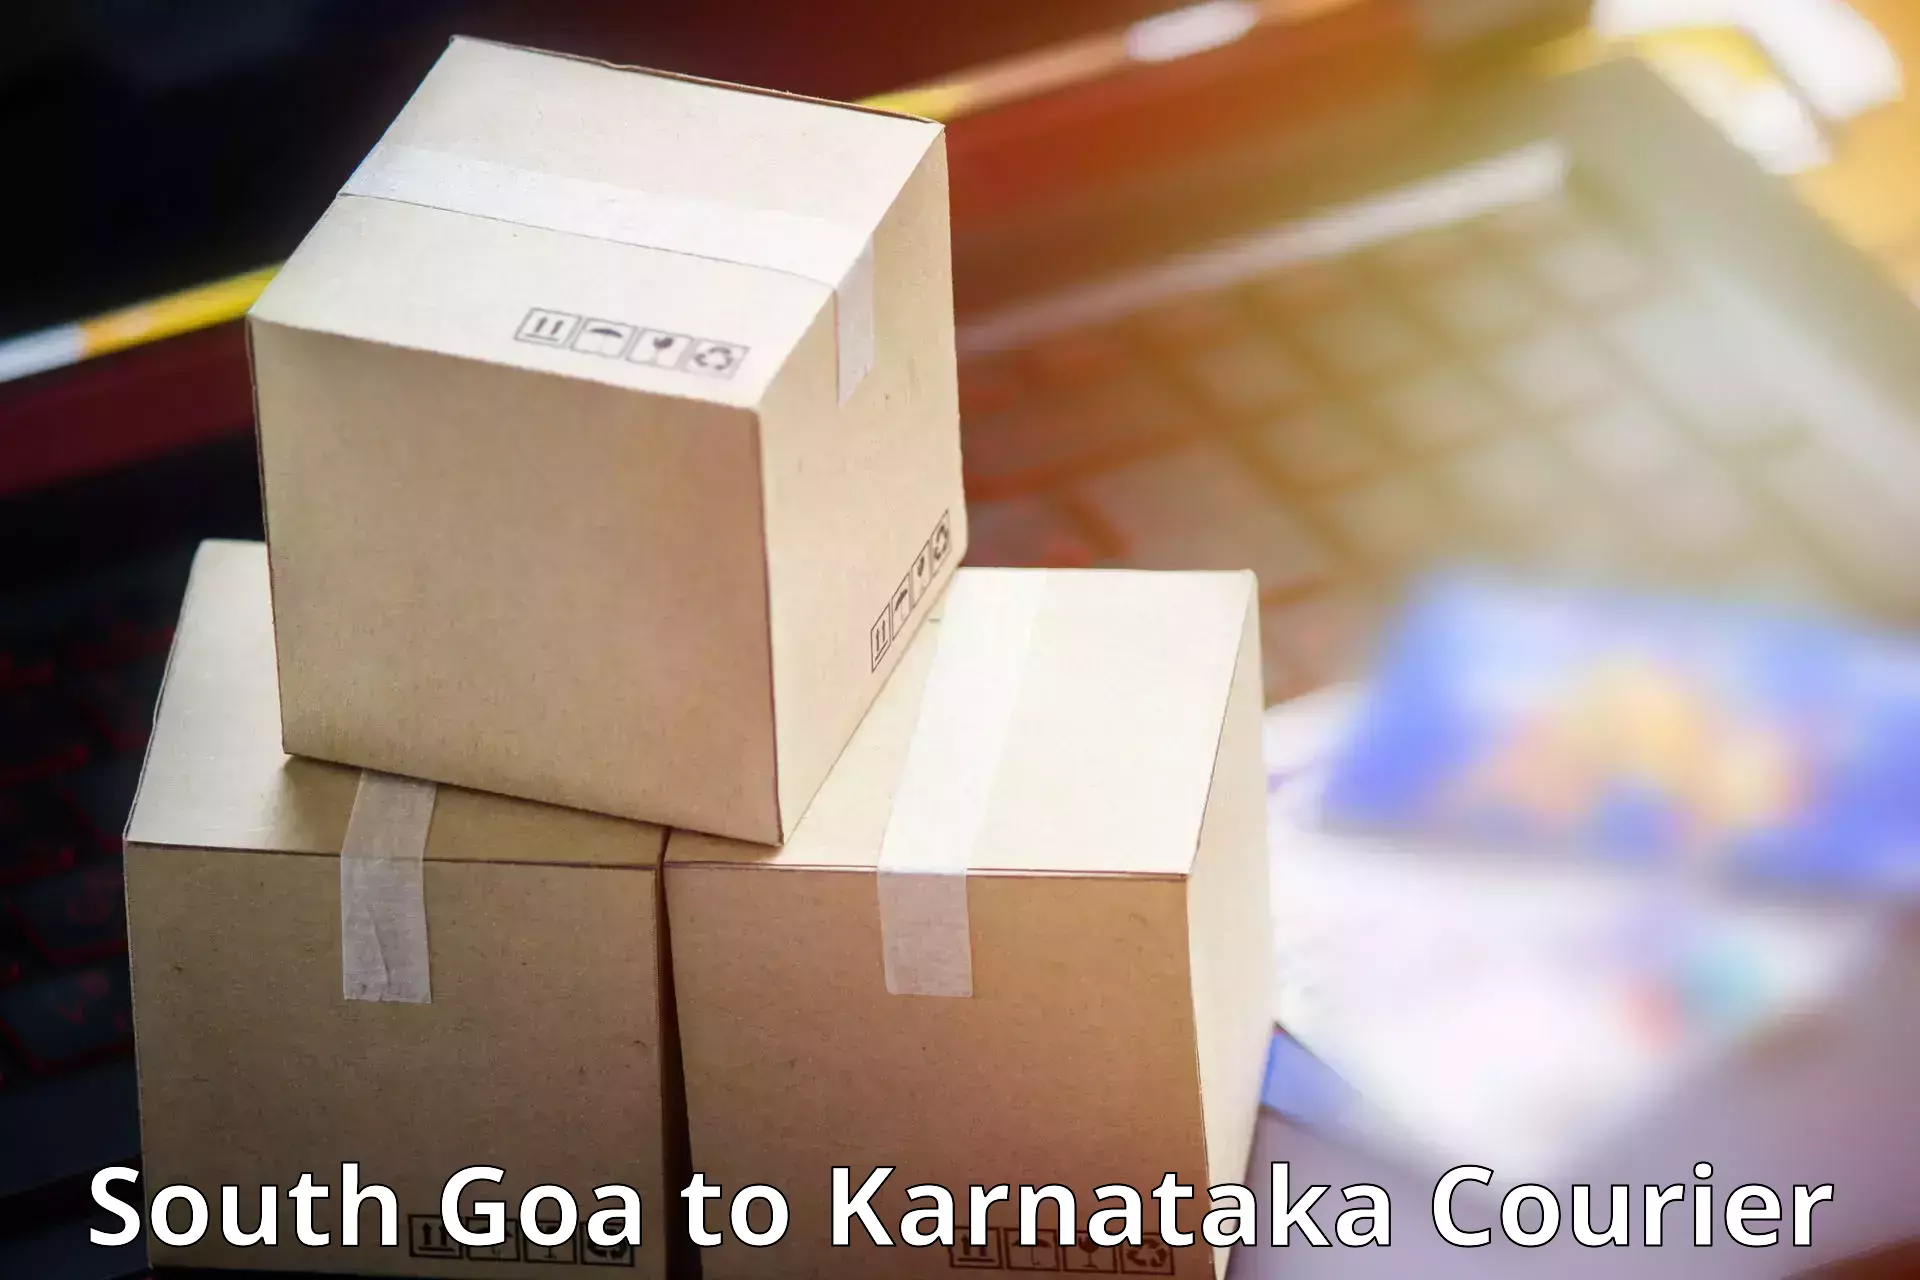 Urban courier service South Goa to Ankola